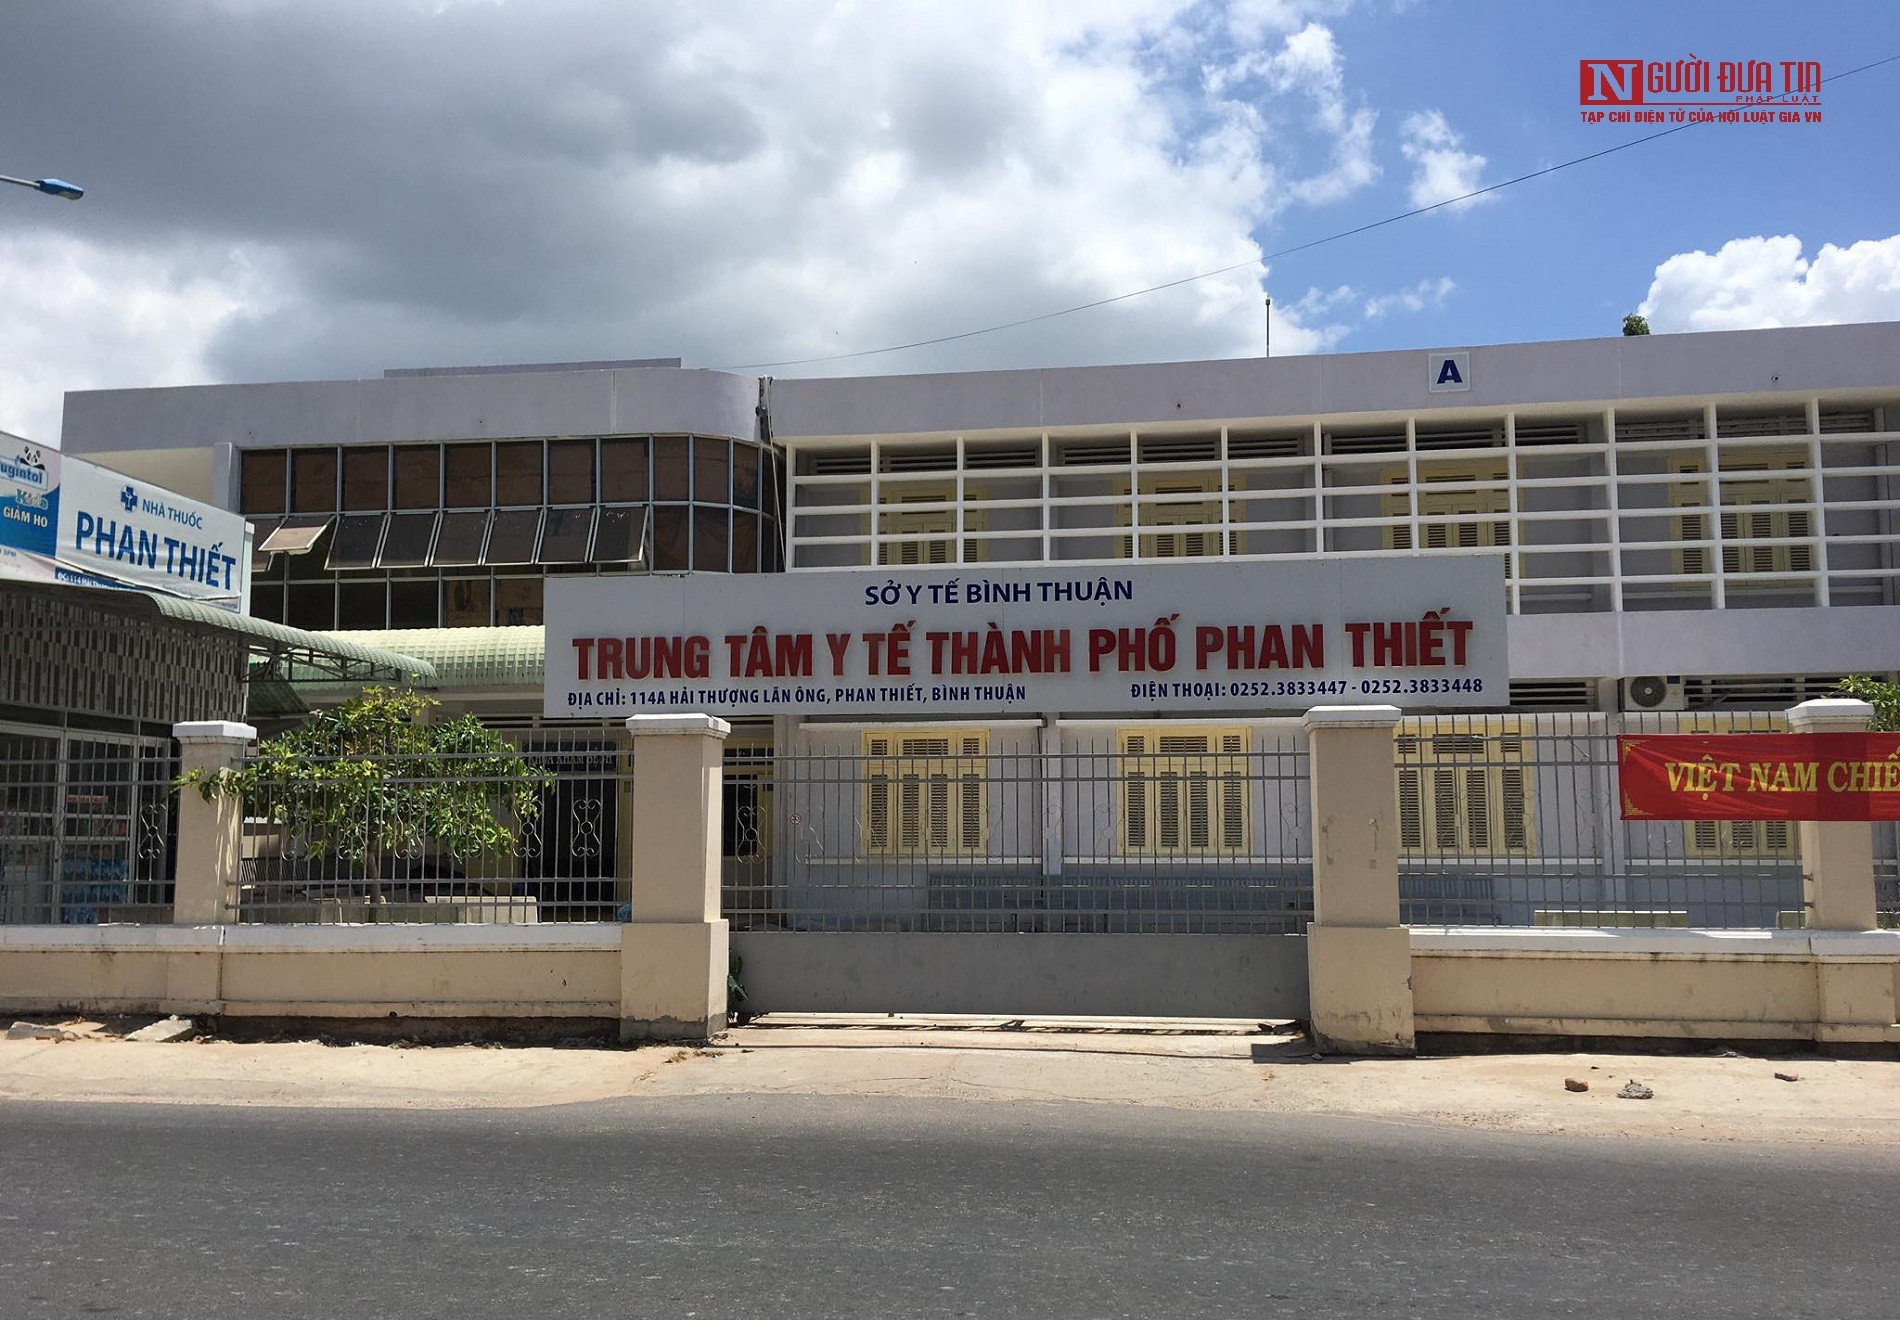 Hồ sơ điều tra - Bình Thuận: 2 bác sĩ ký khống, làm giả giấy khám sức khoẻ, lãnh án tù